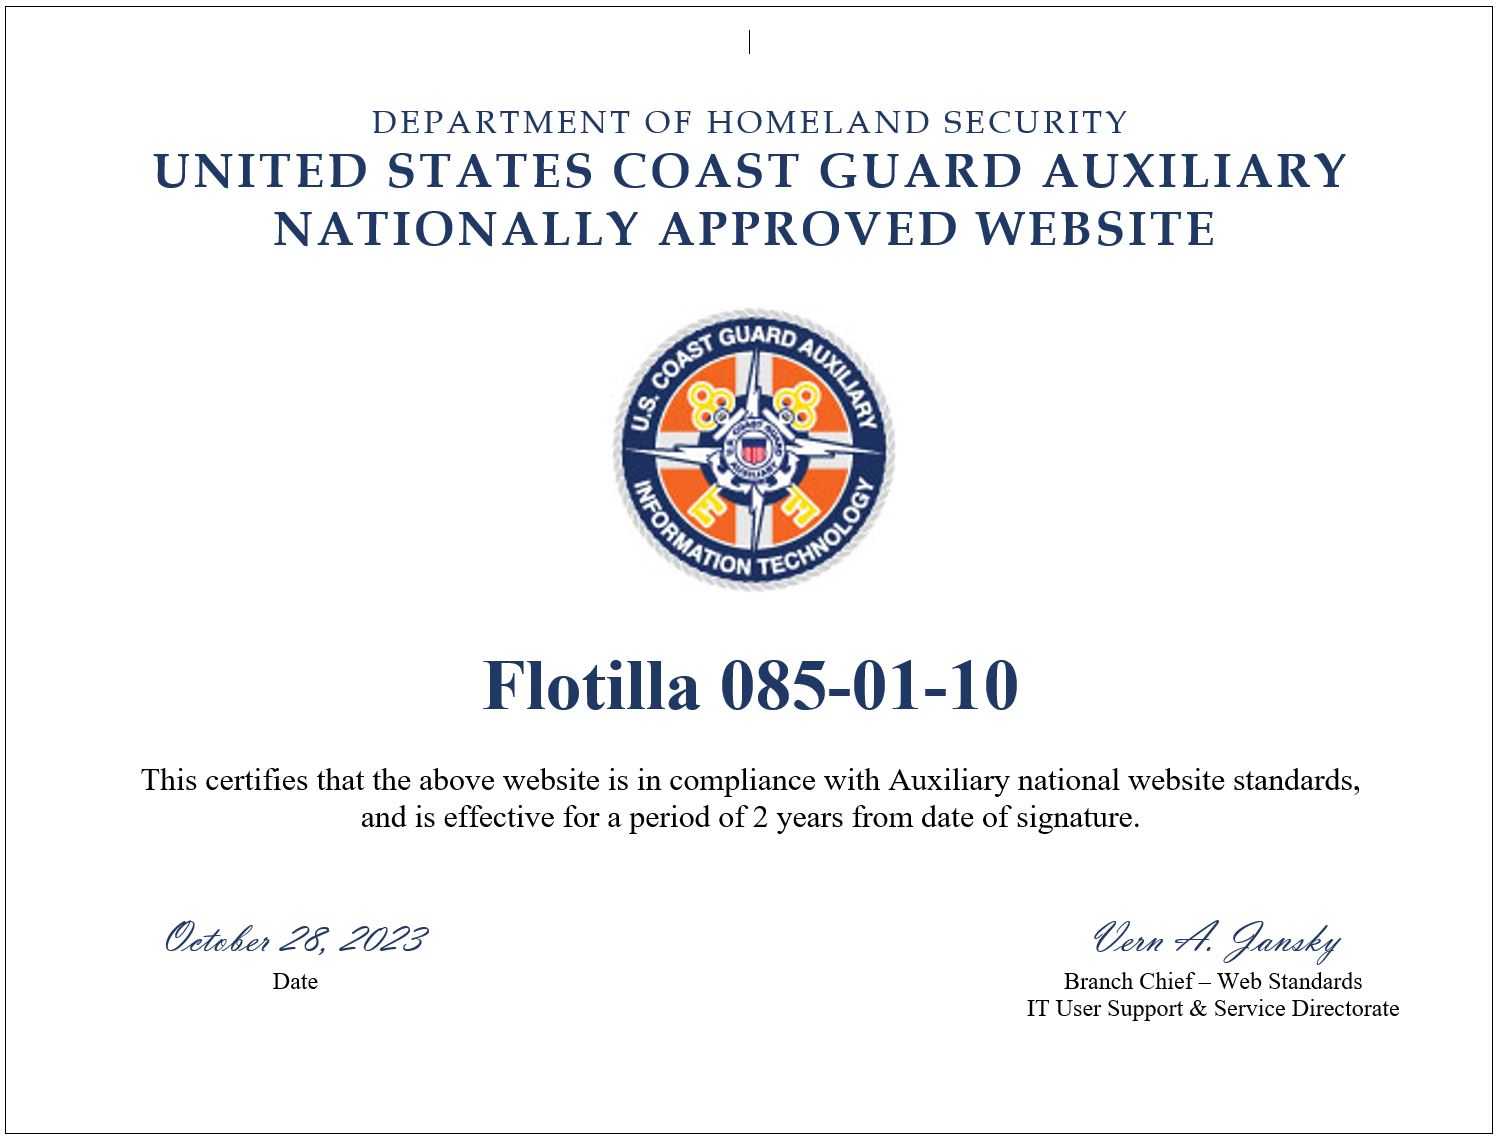 Website compliance certificate